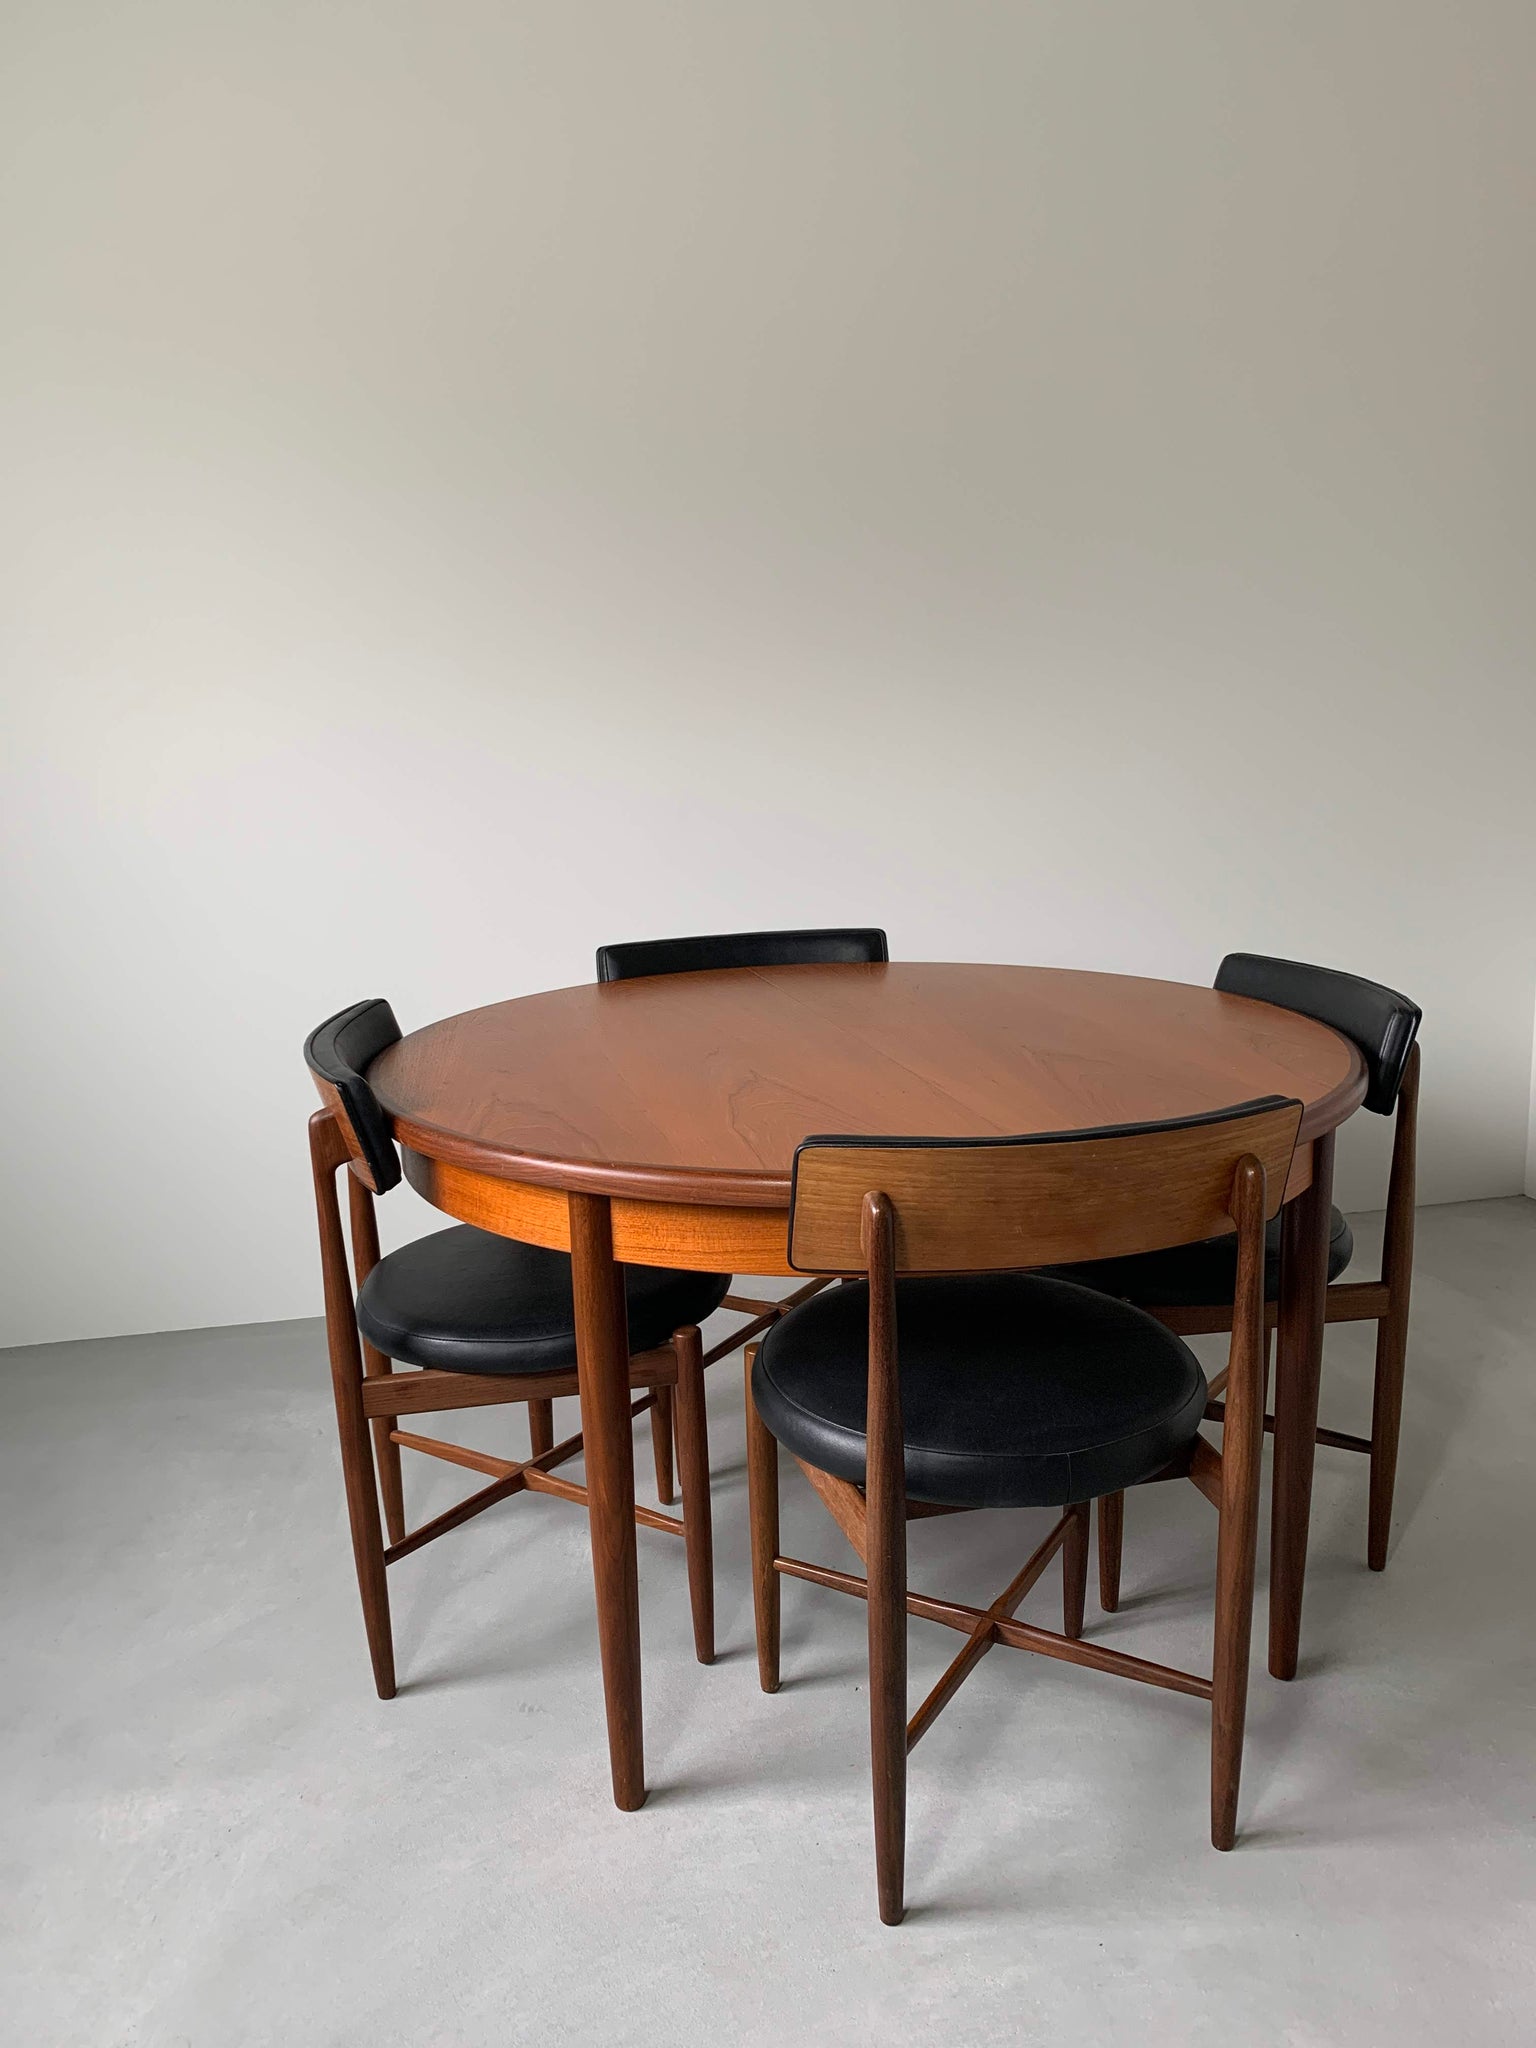 ジープラン フレスコ ダイニング テーブル / g-plan fresco dining table #0017